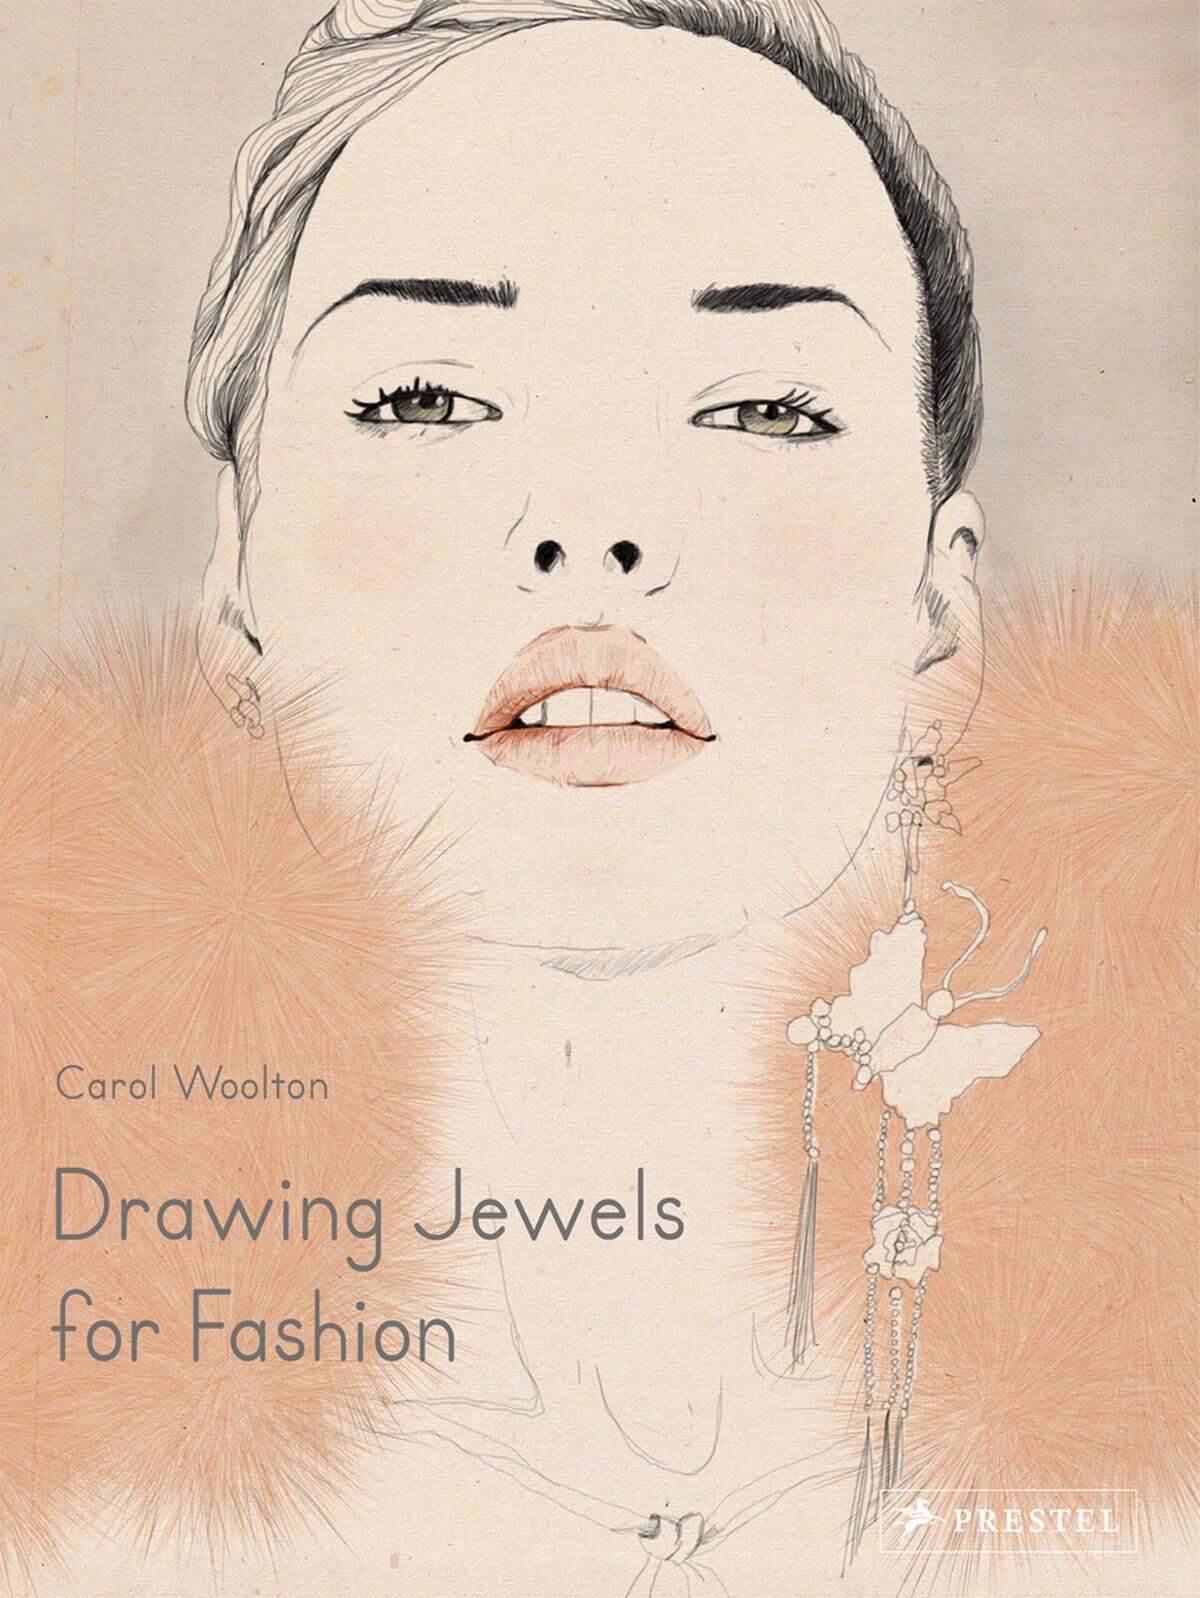 "Je mehr man über Schmuck weiß, desto mehr kann man ihn auch wertschätzen", ist das Motto der Autorin. Drawing Jewels for Fashion ist im Prestel-Verlag erschienen. Beziehbar beispielsweise über www.randomhouse.de oderAmazon.de.